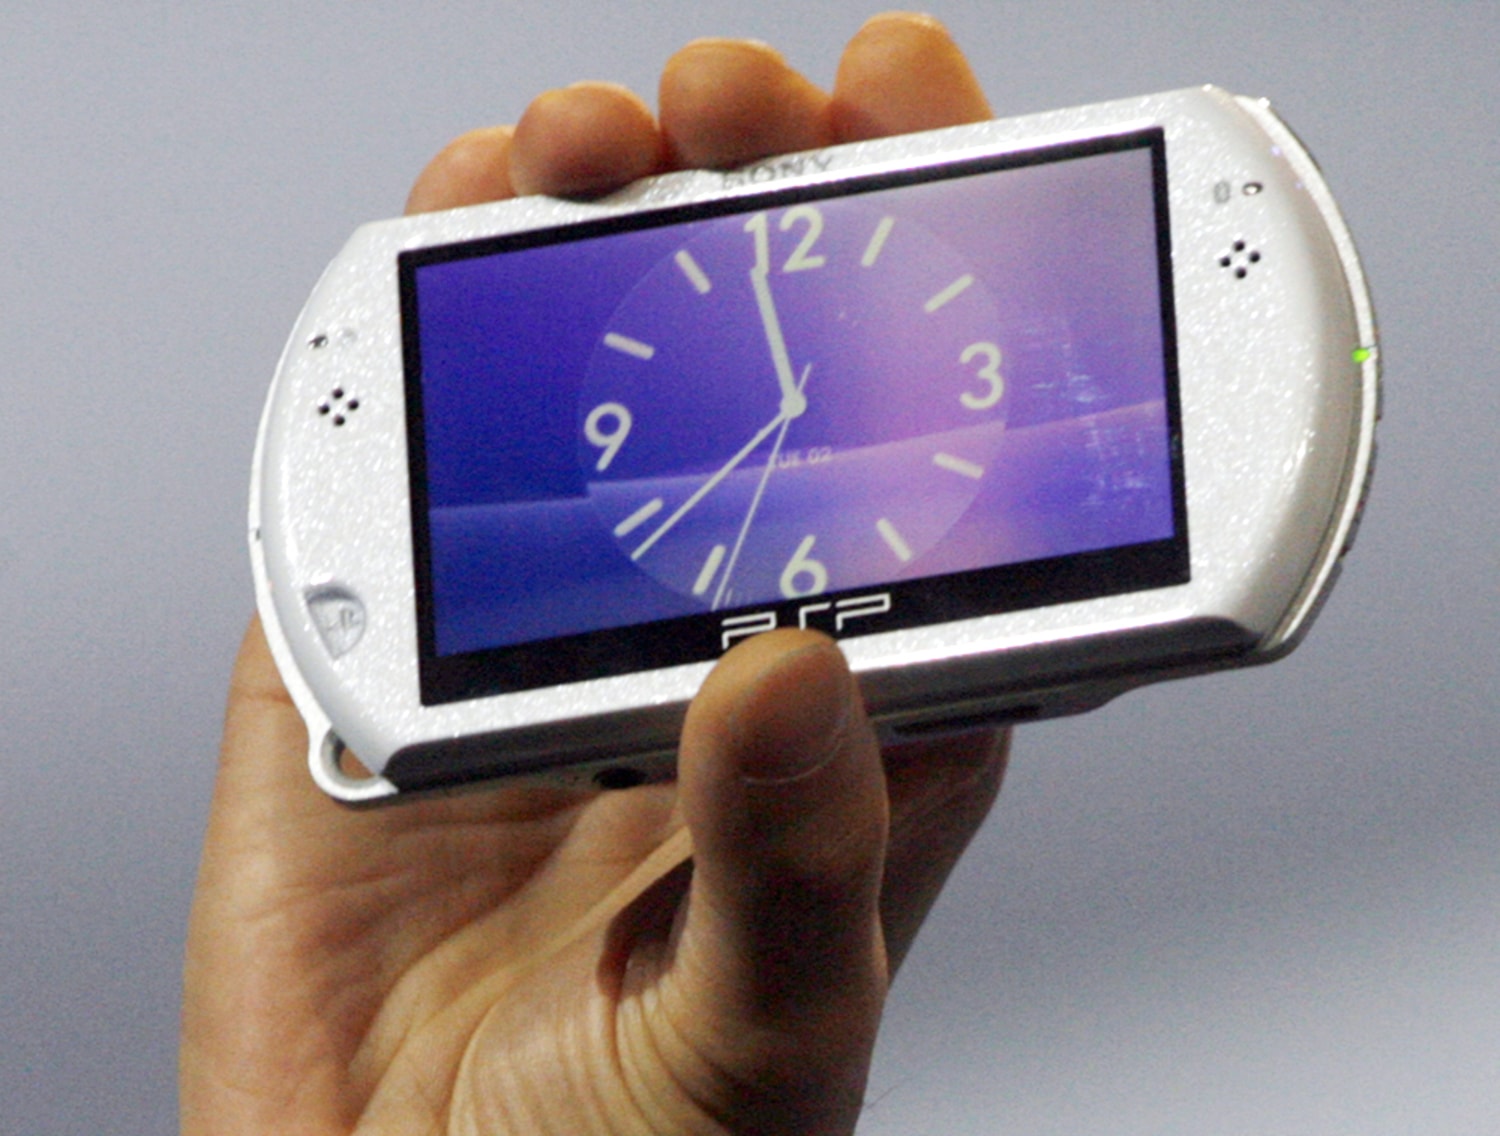 Sony continuerà a vendere giochi per la PSP - ItaliaSmartphoneReview